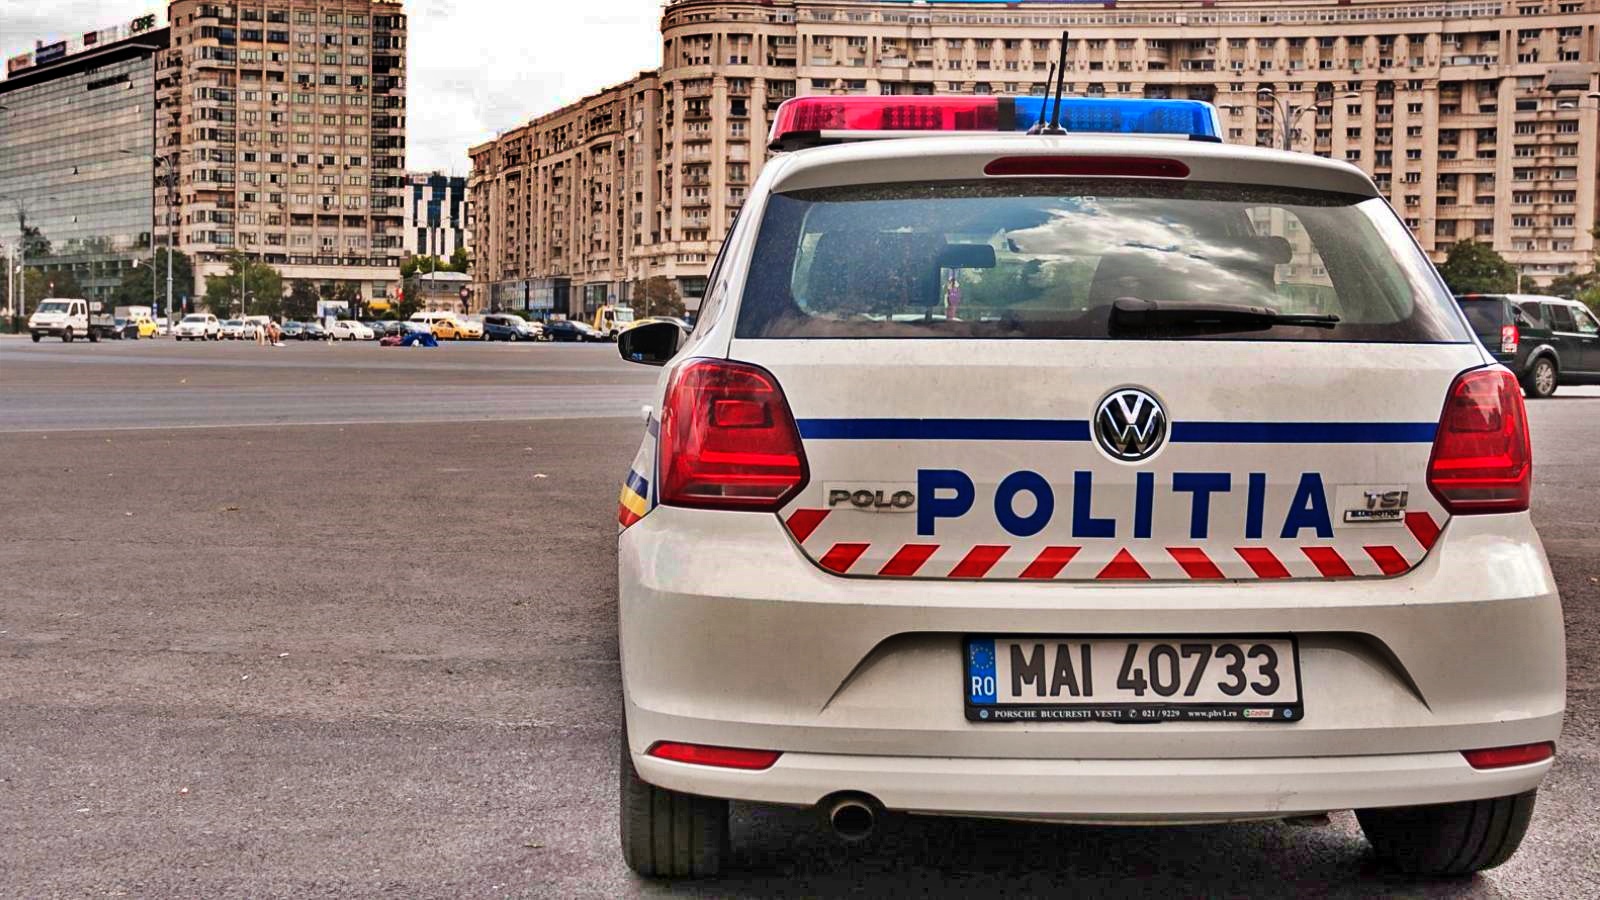 Rumänische Polizei Die Botschaft für Millionen Rumänen im ganzen Land